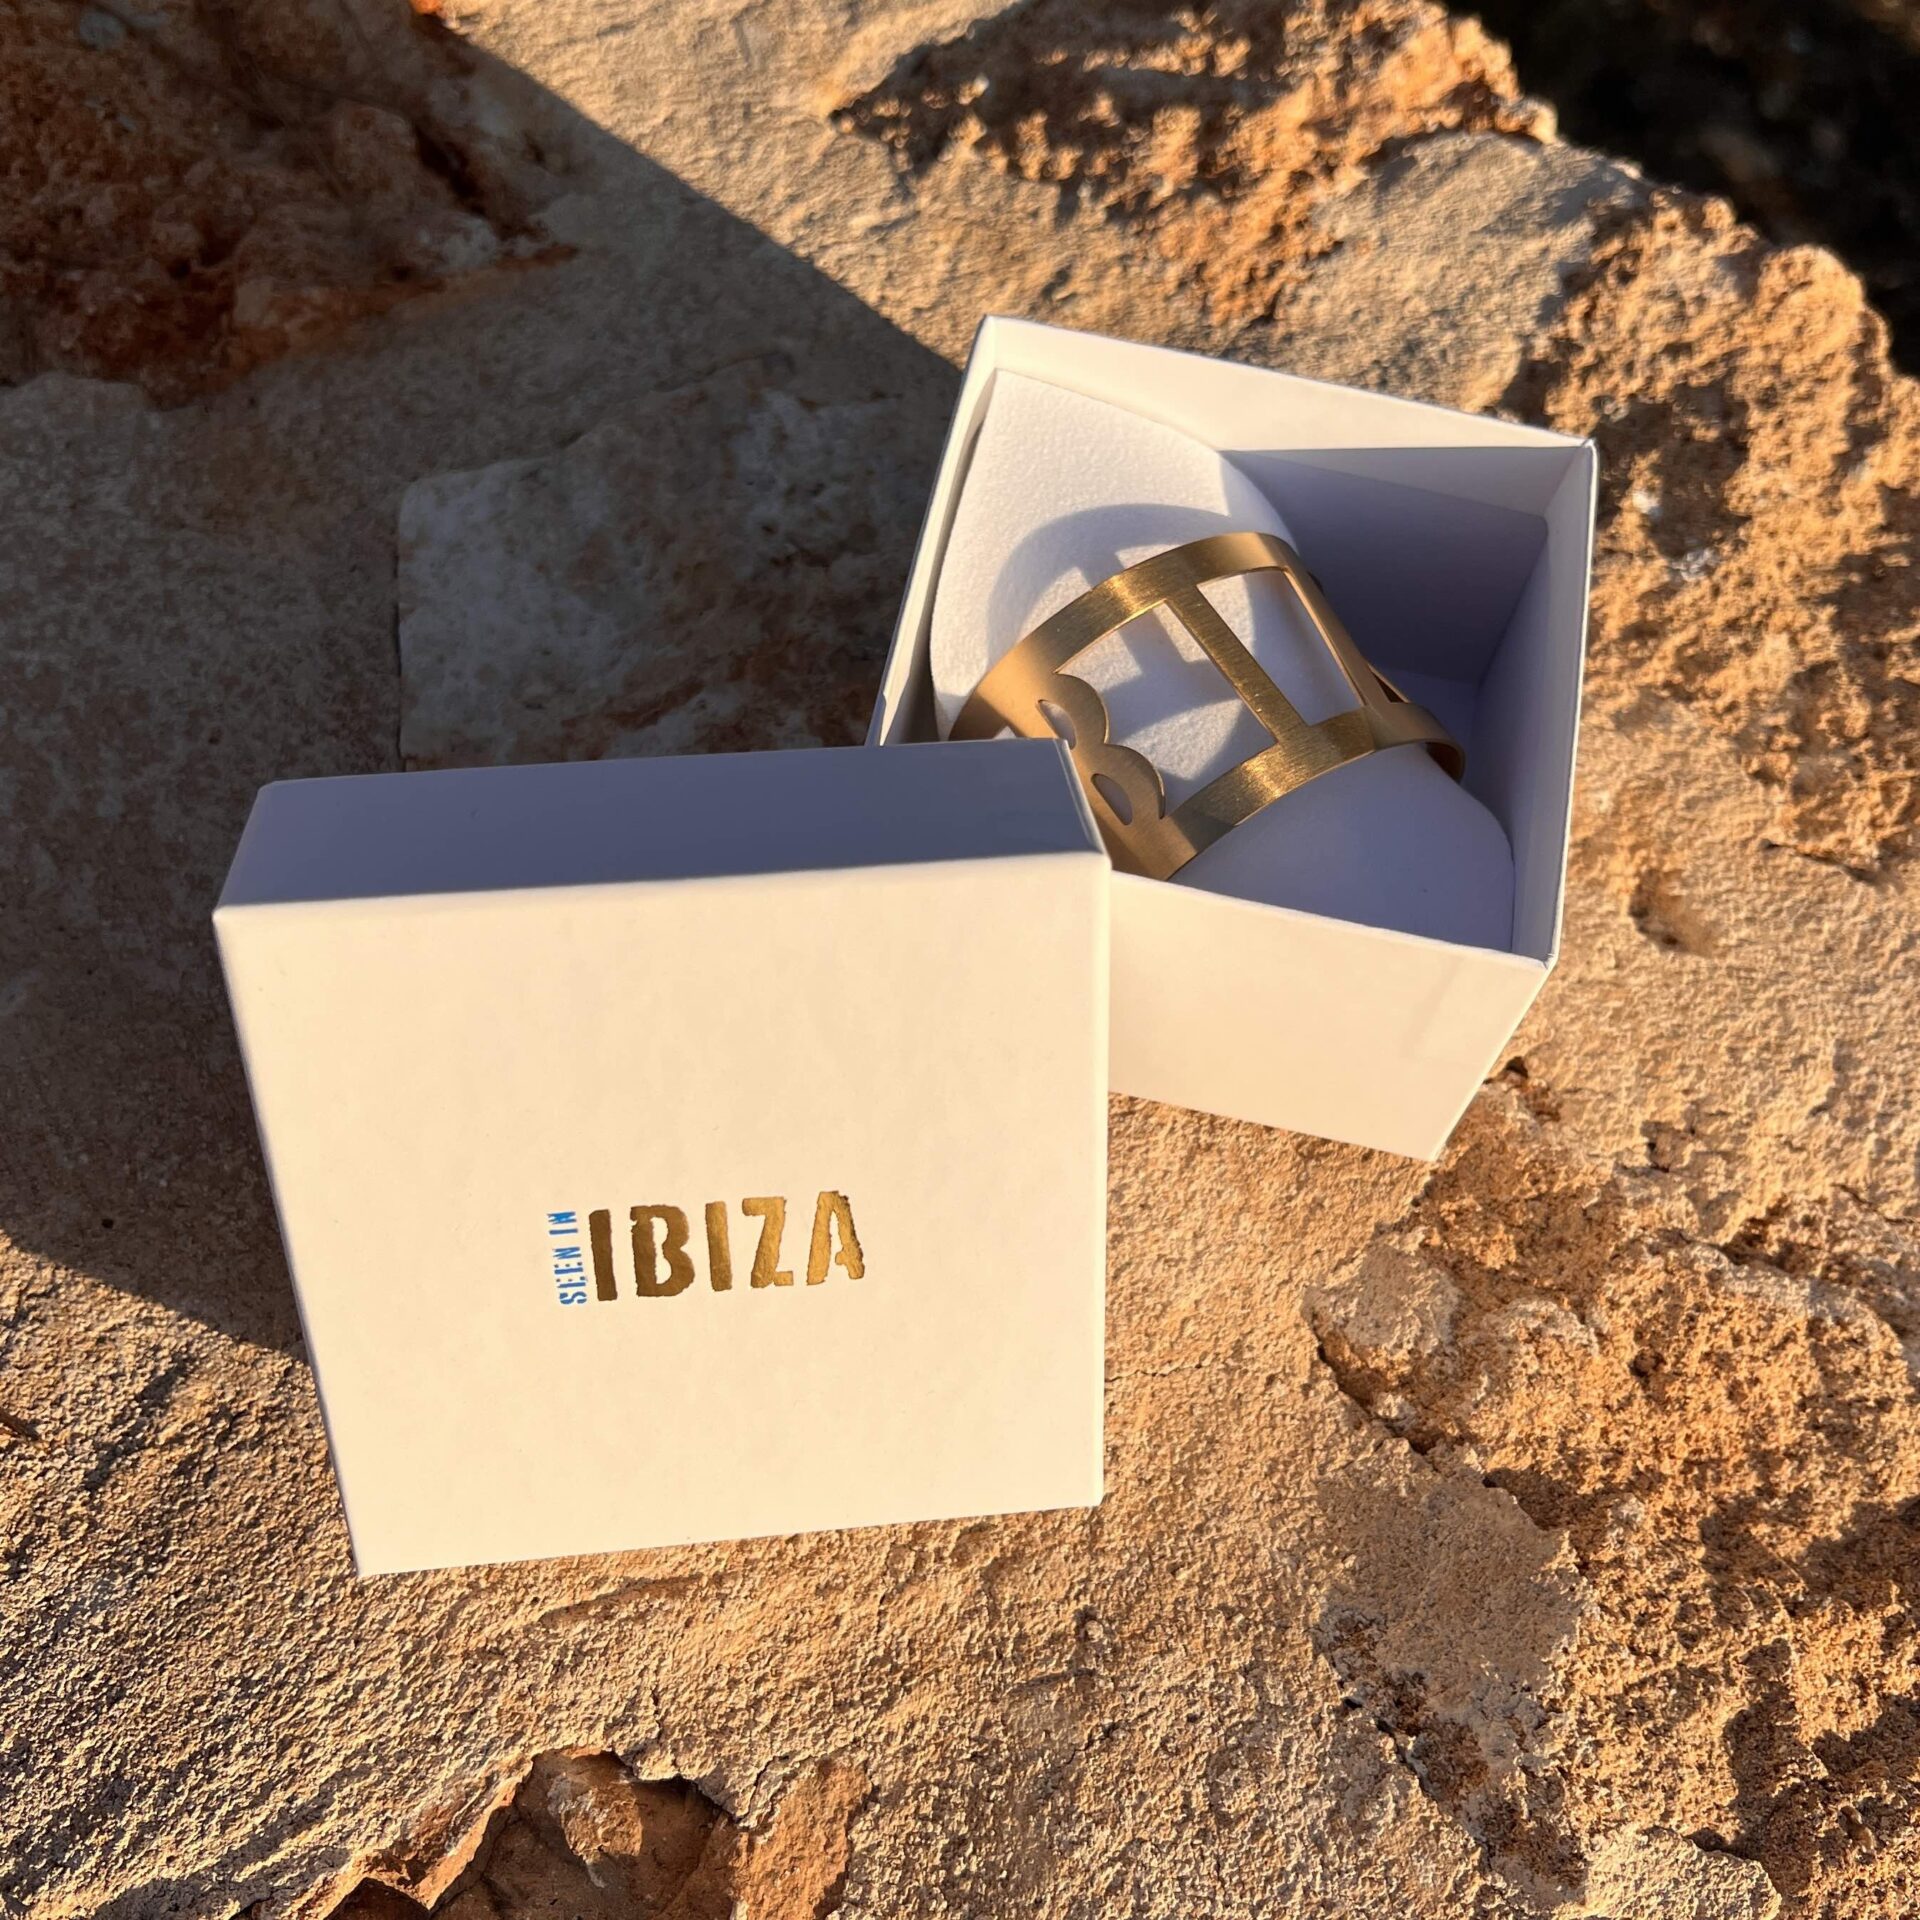 Sieradendoos34 Silvie ontwierp een eigen Ibiza armband: 'Veertjes, schelpen, steentjes of kralen zijn er al dus ik kies voor iets anders!'